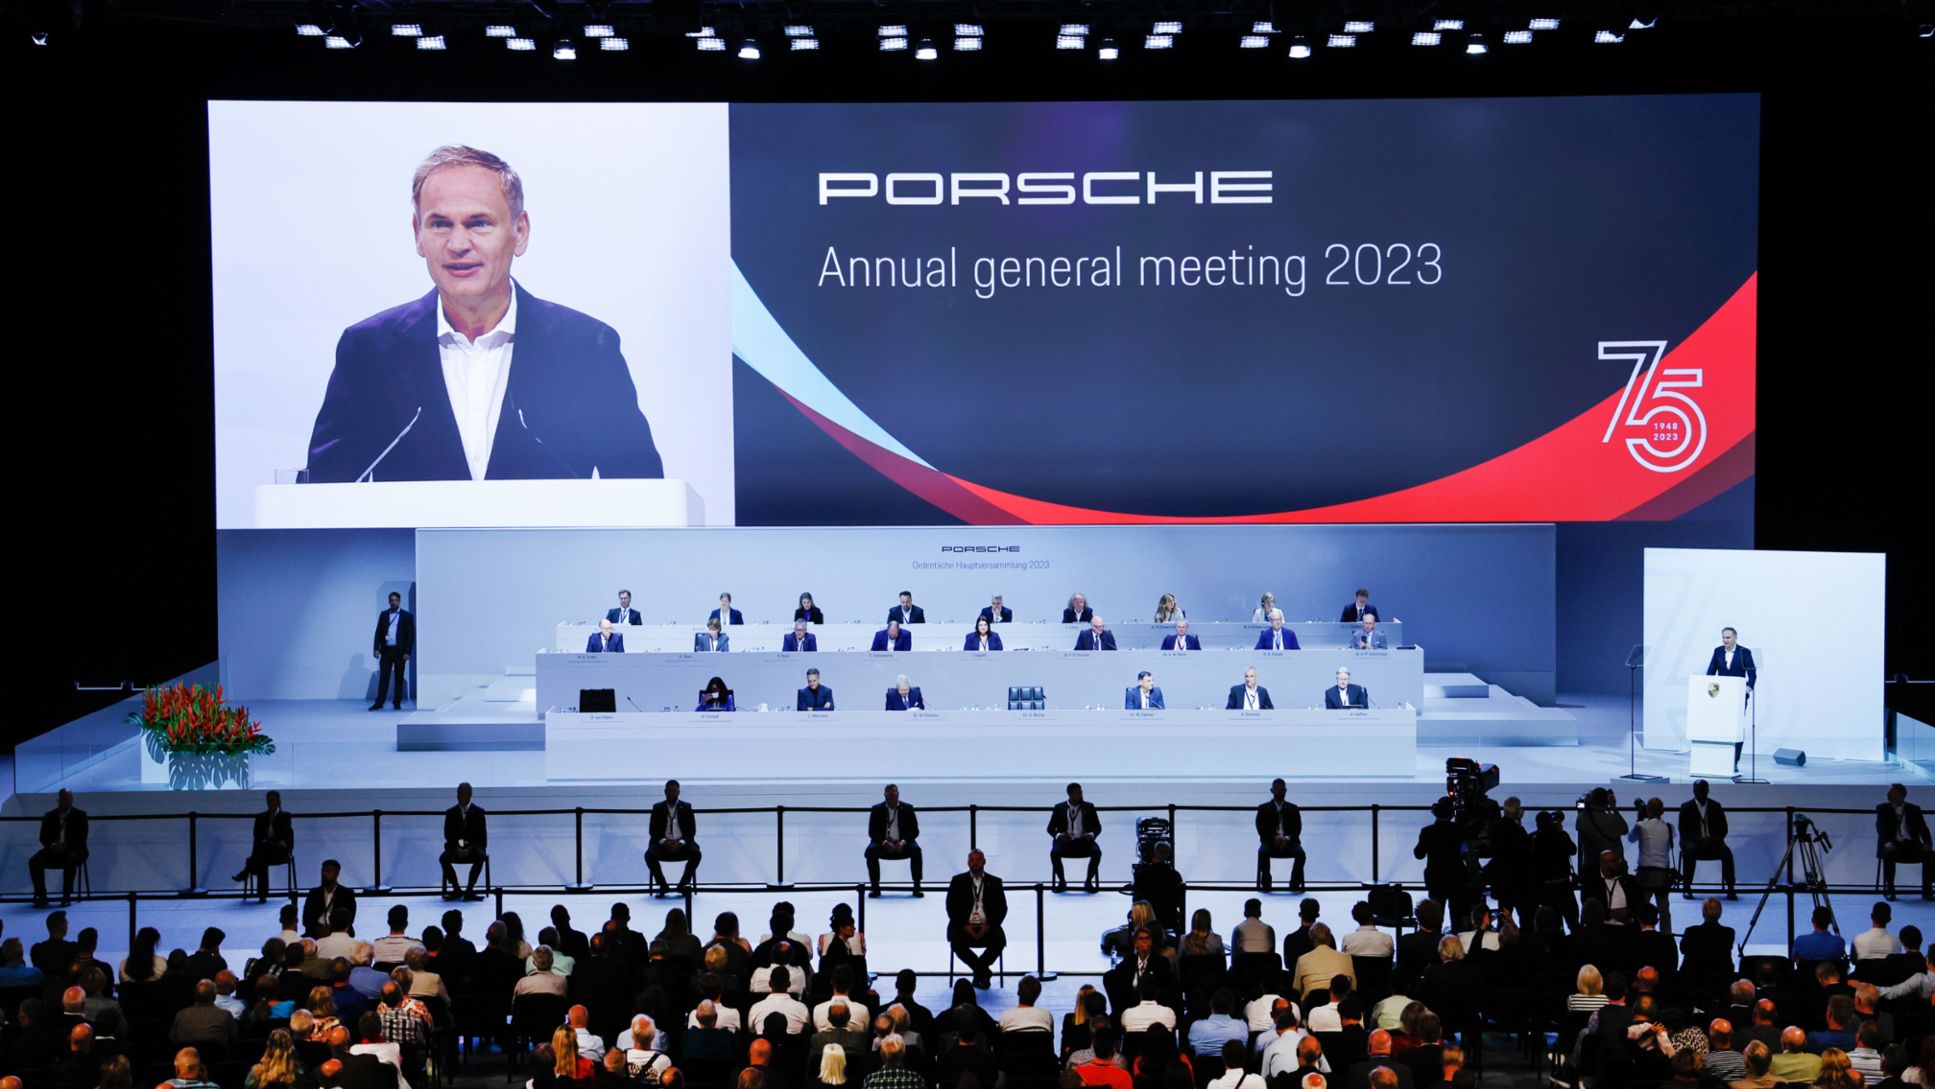 Porsche anunță rezultate bune, clasându-se printre cele mai valoroase mărci de lux, comunicat de presă, 28/06/2023, Porsche AG